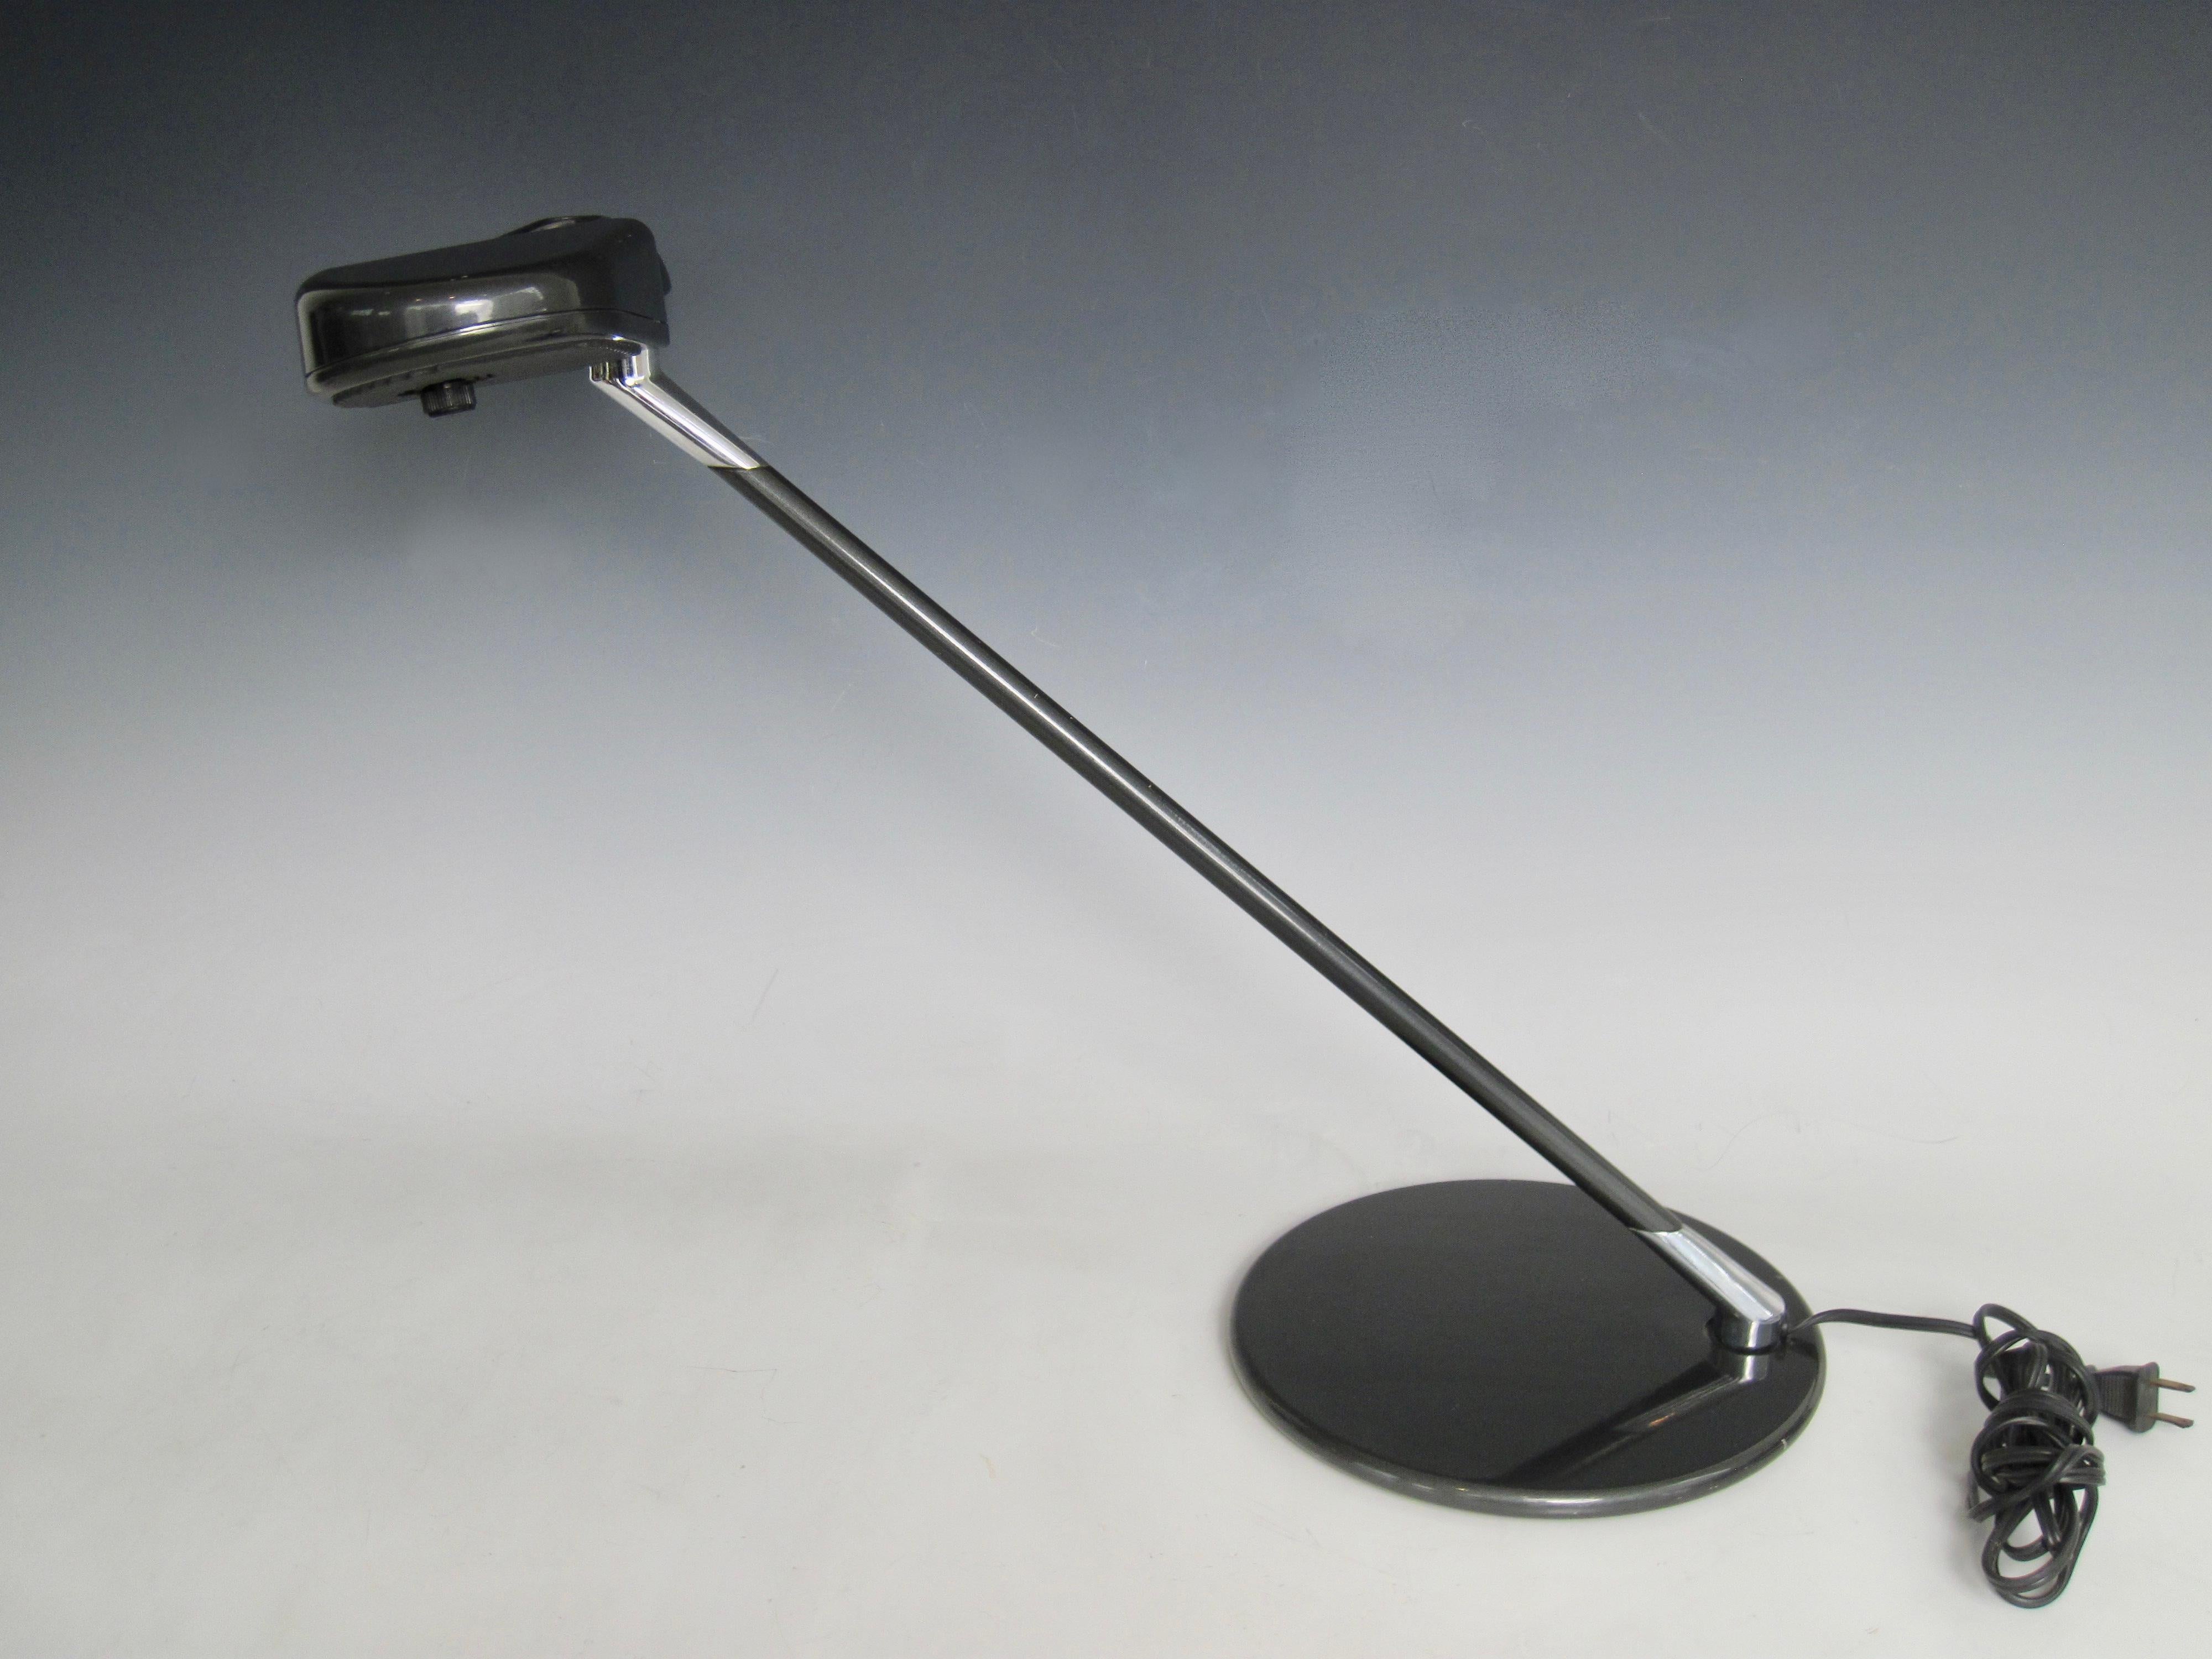 A Ring A 400 Halogen-Tischleuchte, entworfen von Bruno Gecchelin für Arteluce.  Die dunkelgrau lackierte Schreibtischlampe aus gewichtetem Metall hat einen schwenkbaren Kopf für die Beleuchtung von Aufgaben. Der tragende Reflektorkopf hält den